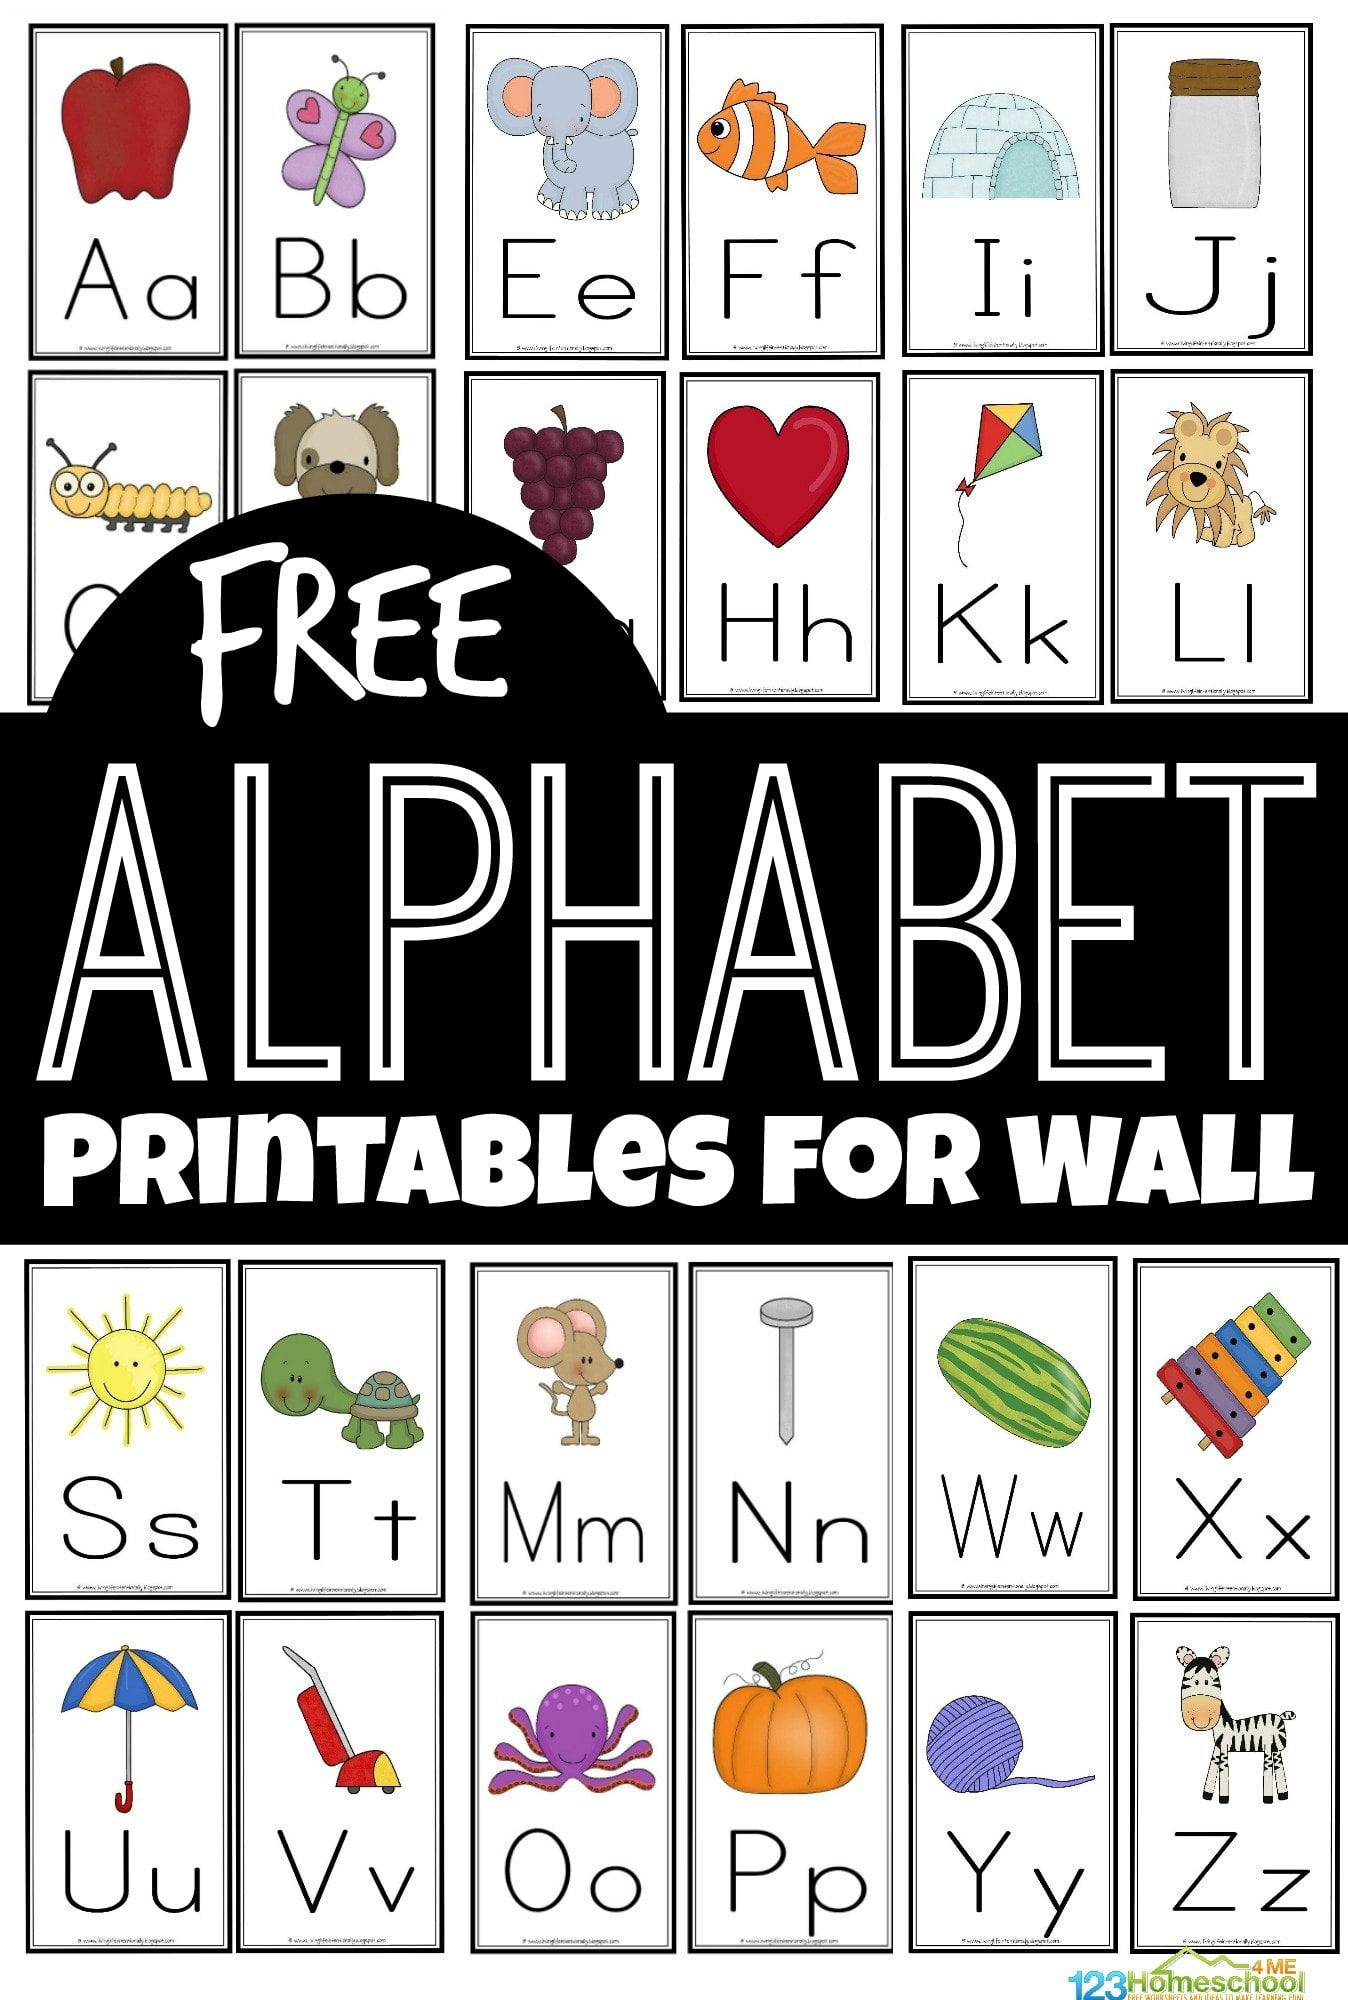 Printable Alphabet For Classroom